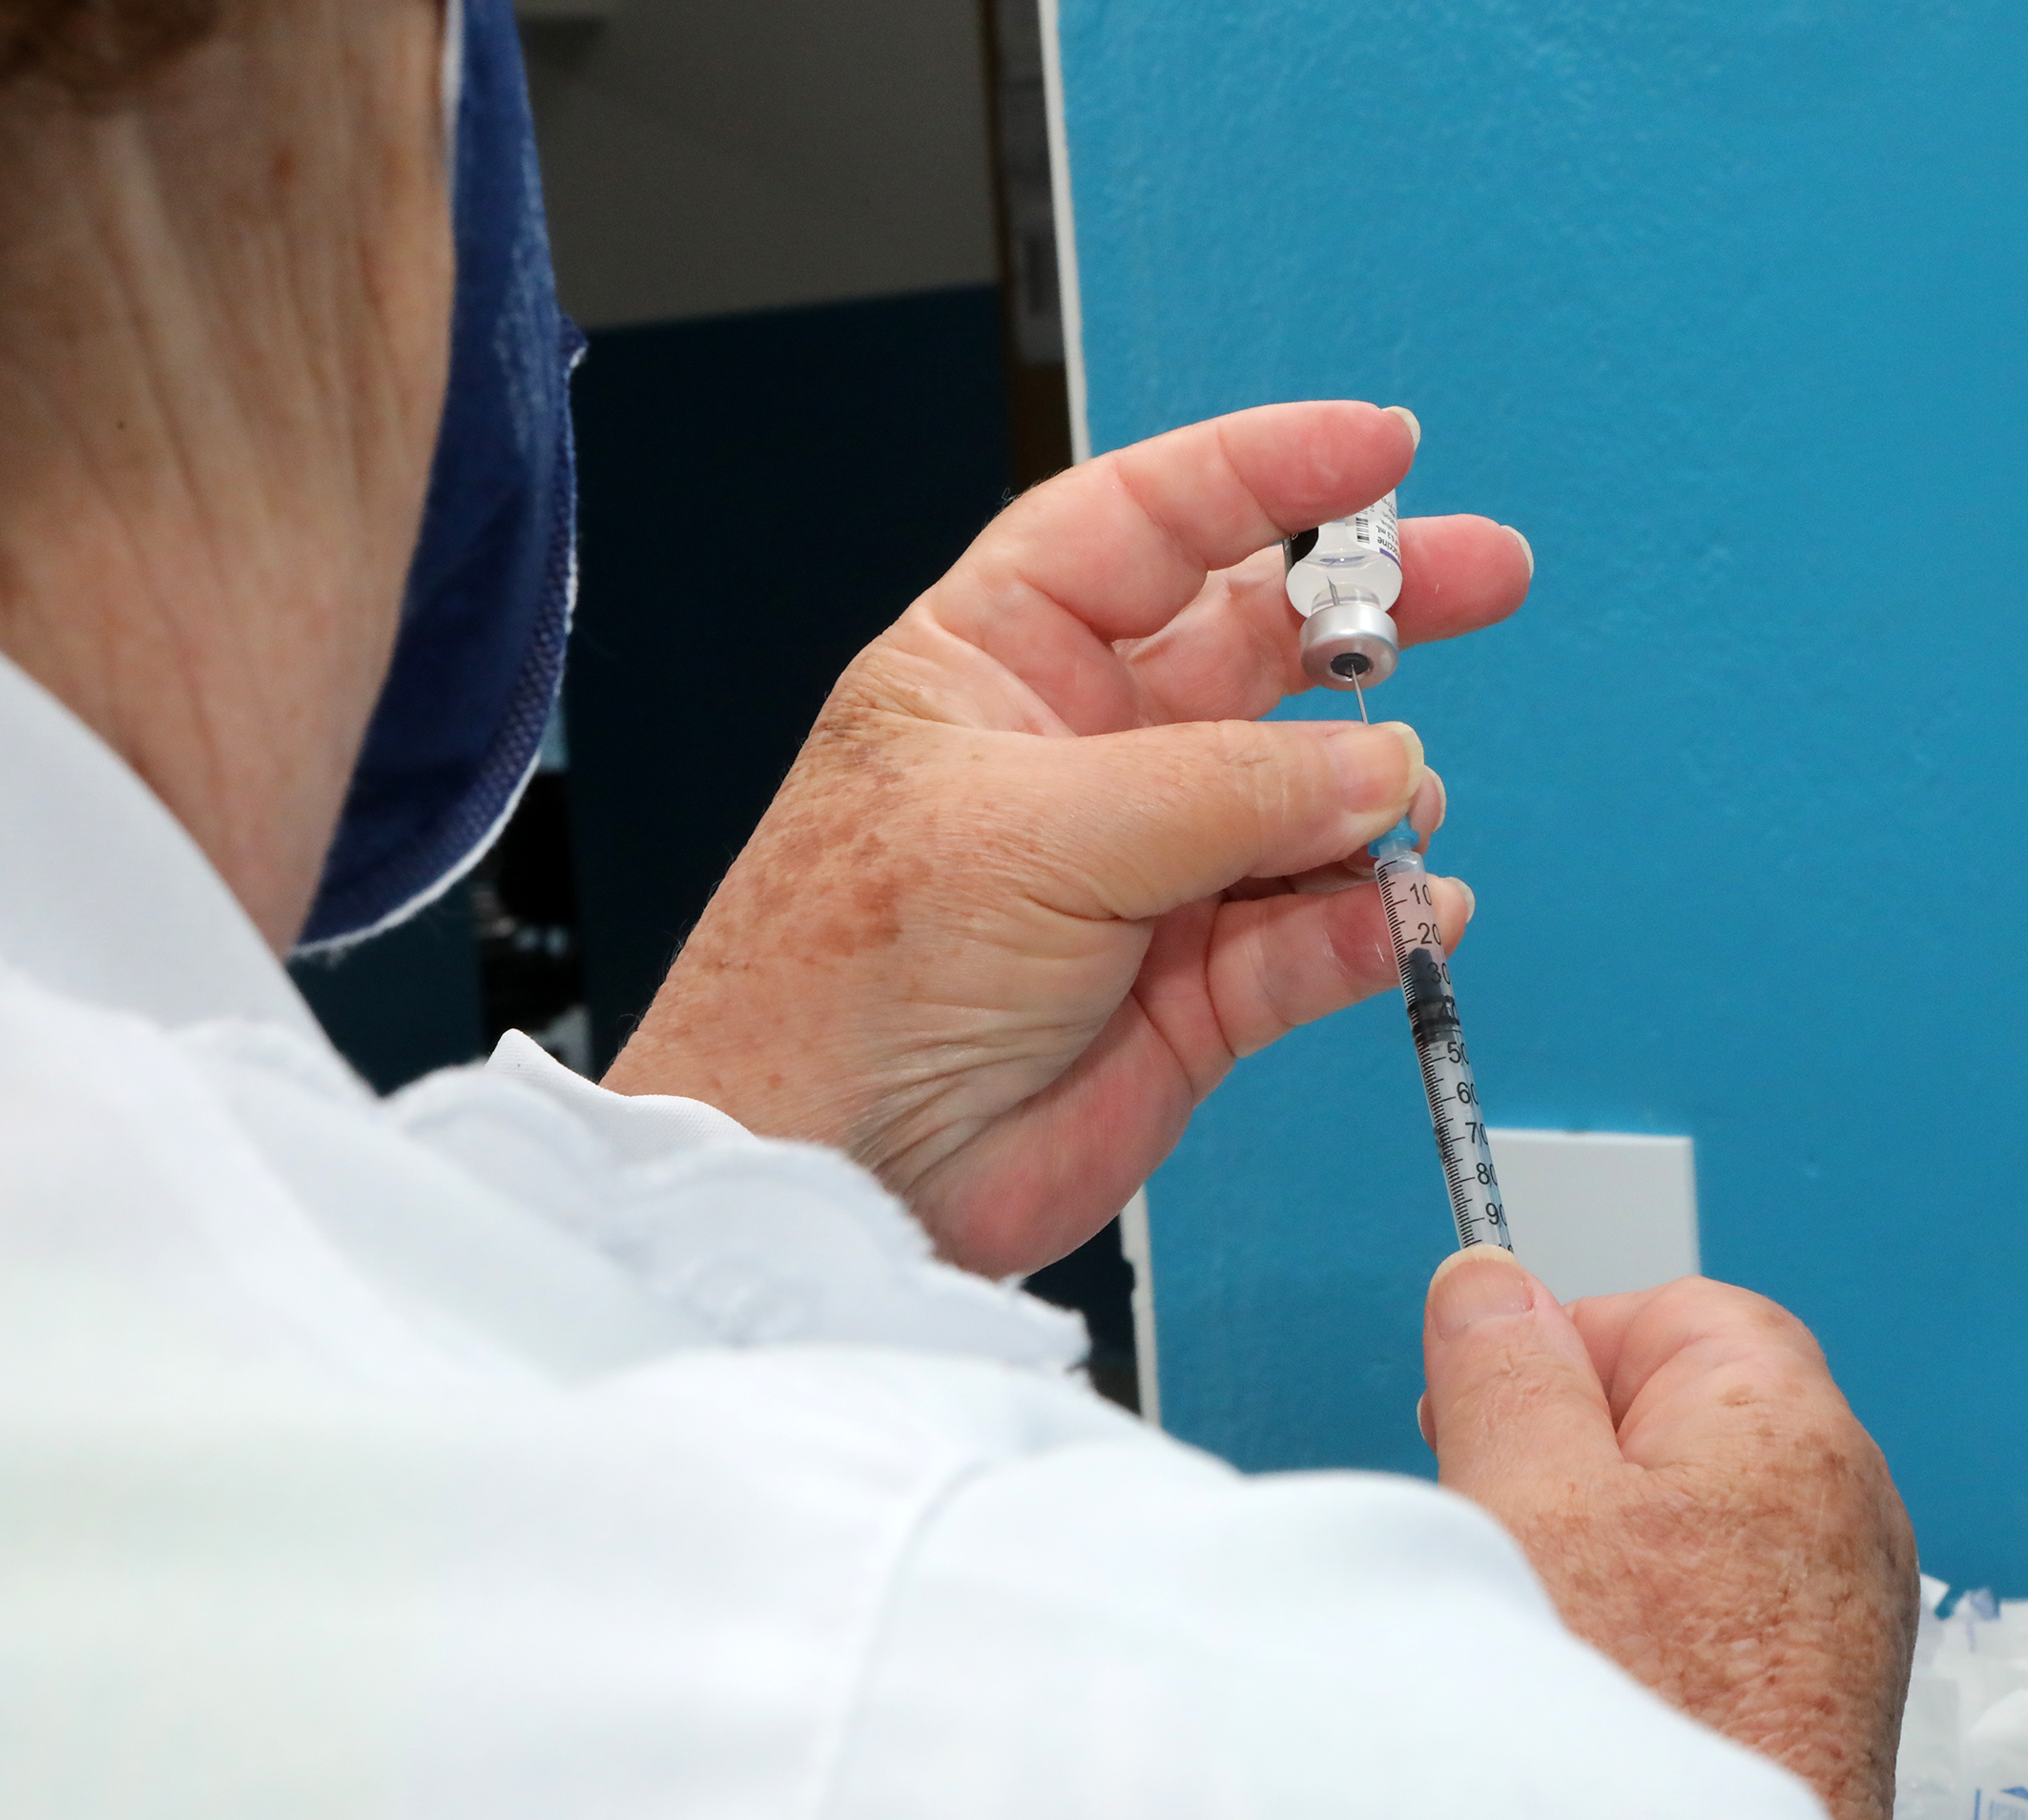 Foto de profissional de enfermagem preparando uma dose de vacina